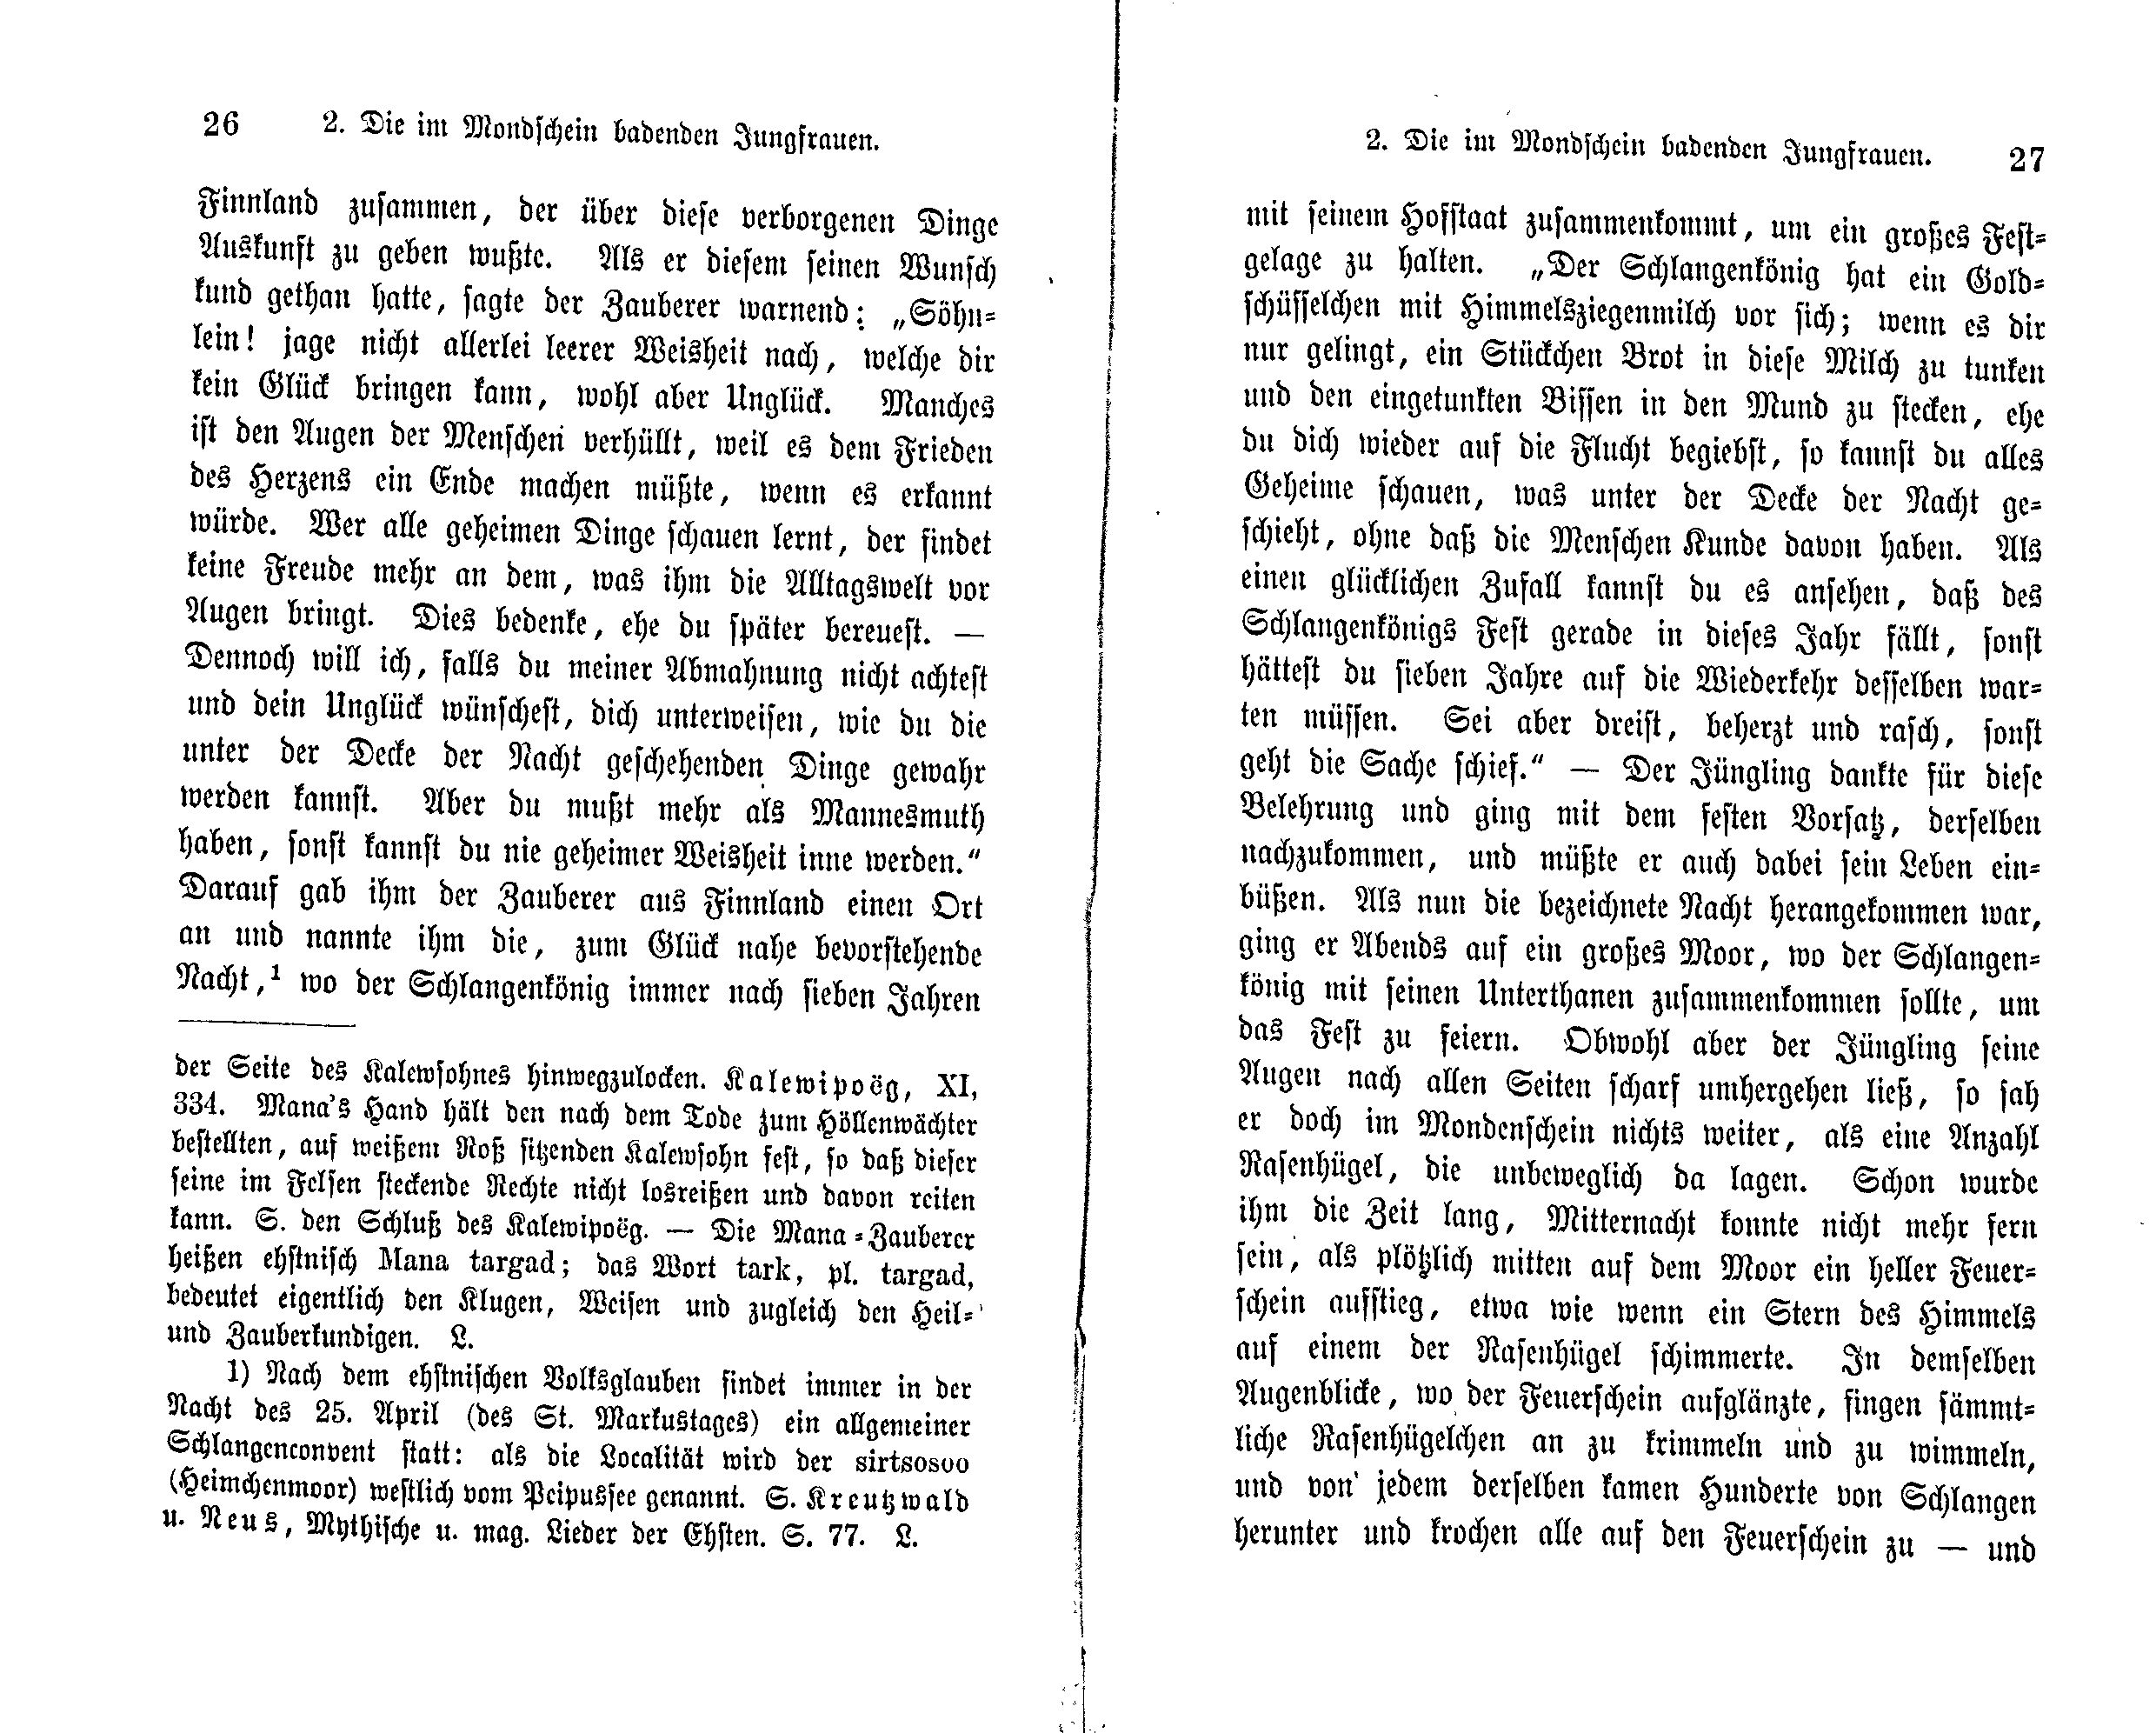 Die im Mondschein badenden Jungfrauen (1869) | 2. (26-27) Põhitekst